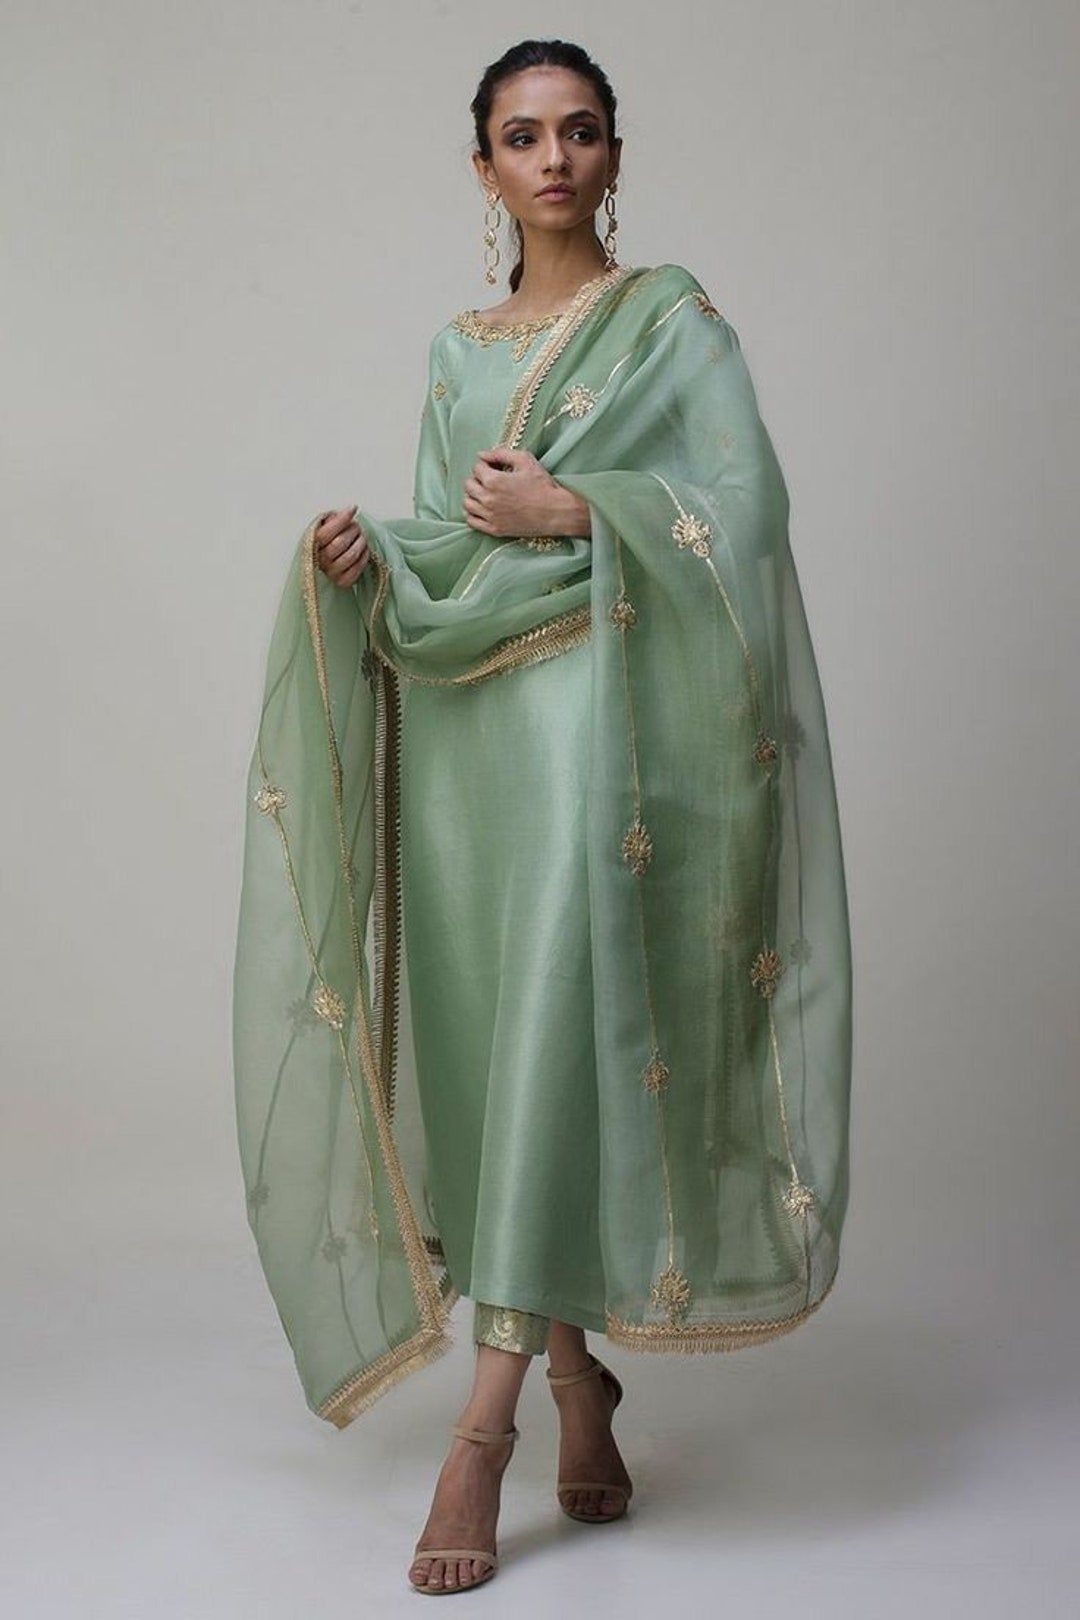 Faun Gloss Velvet Suit With Tilla Embroidery, Maroon Dupatta